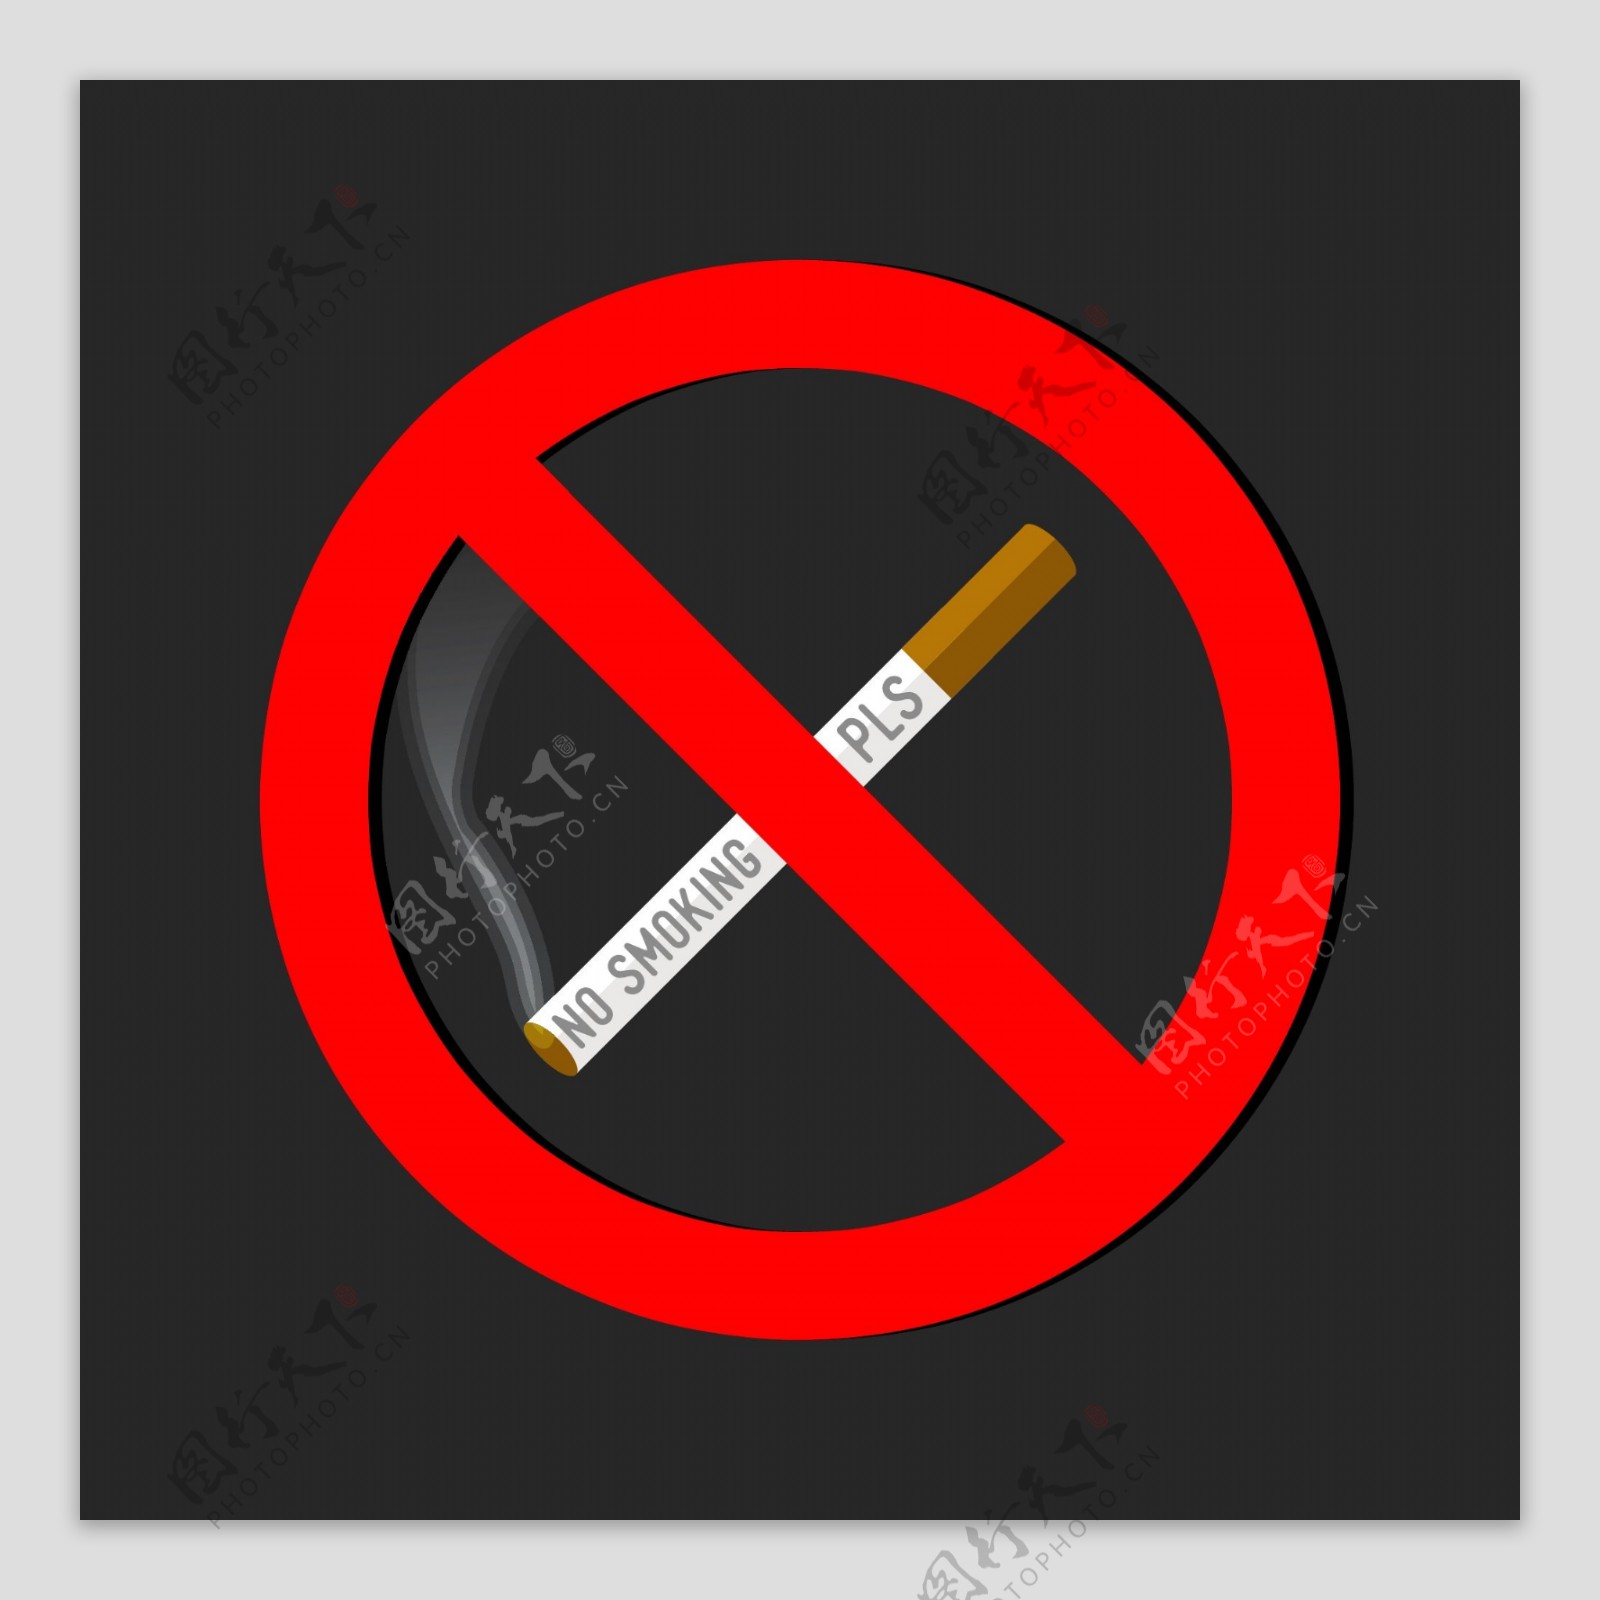 禁止吸烟的标志